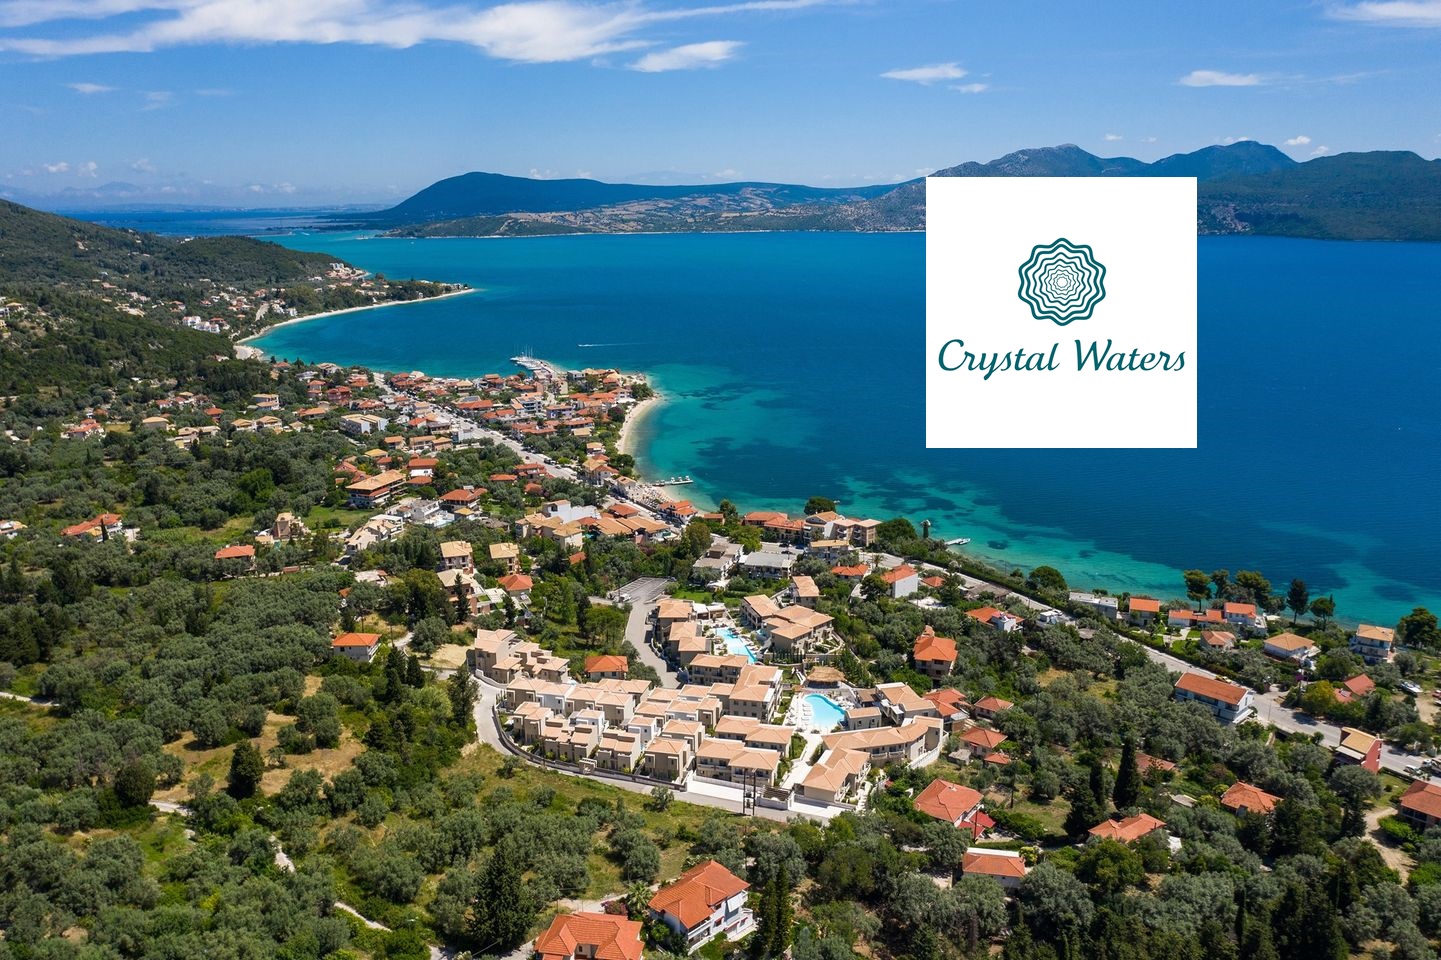 Crystal Waters hotel, Lefkada island, Greece